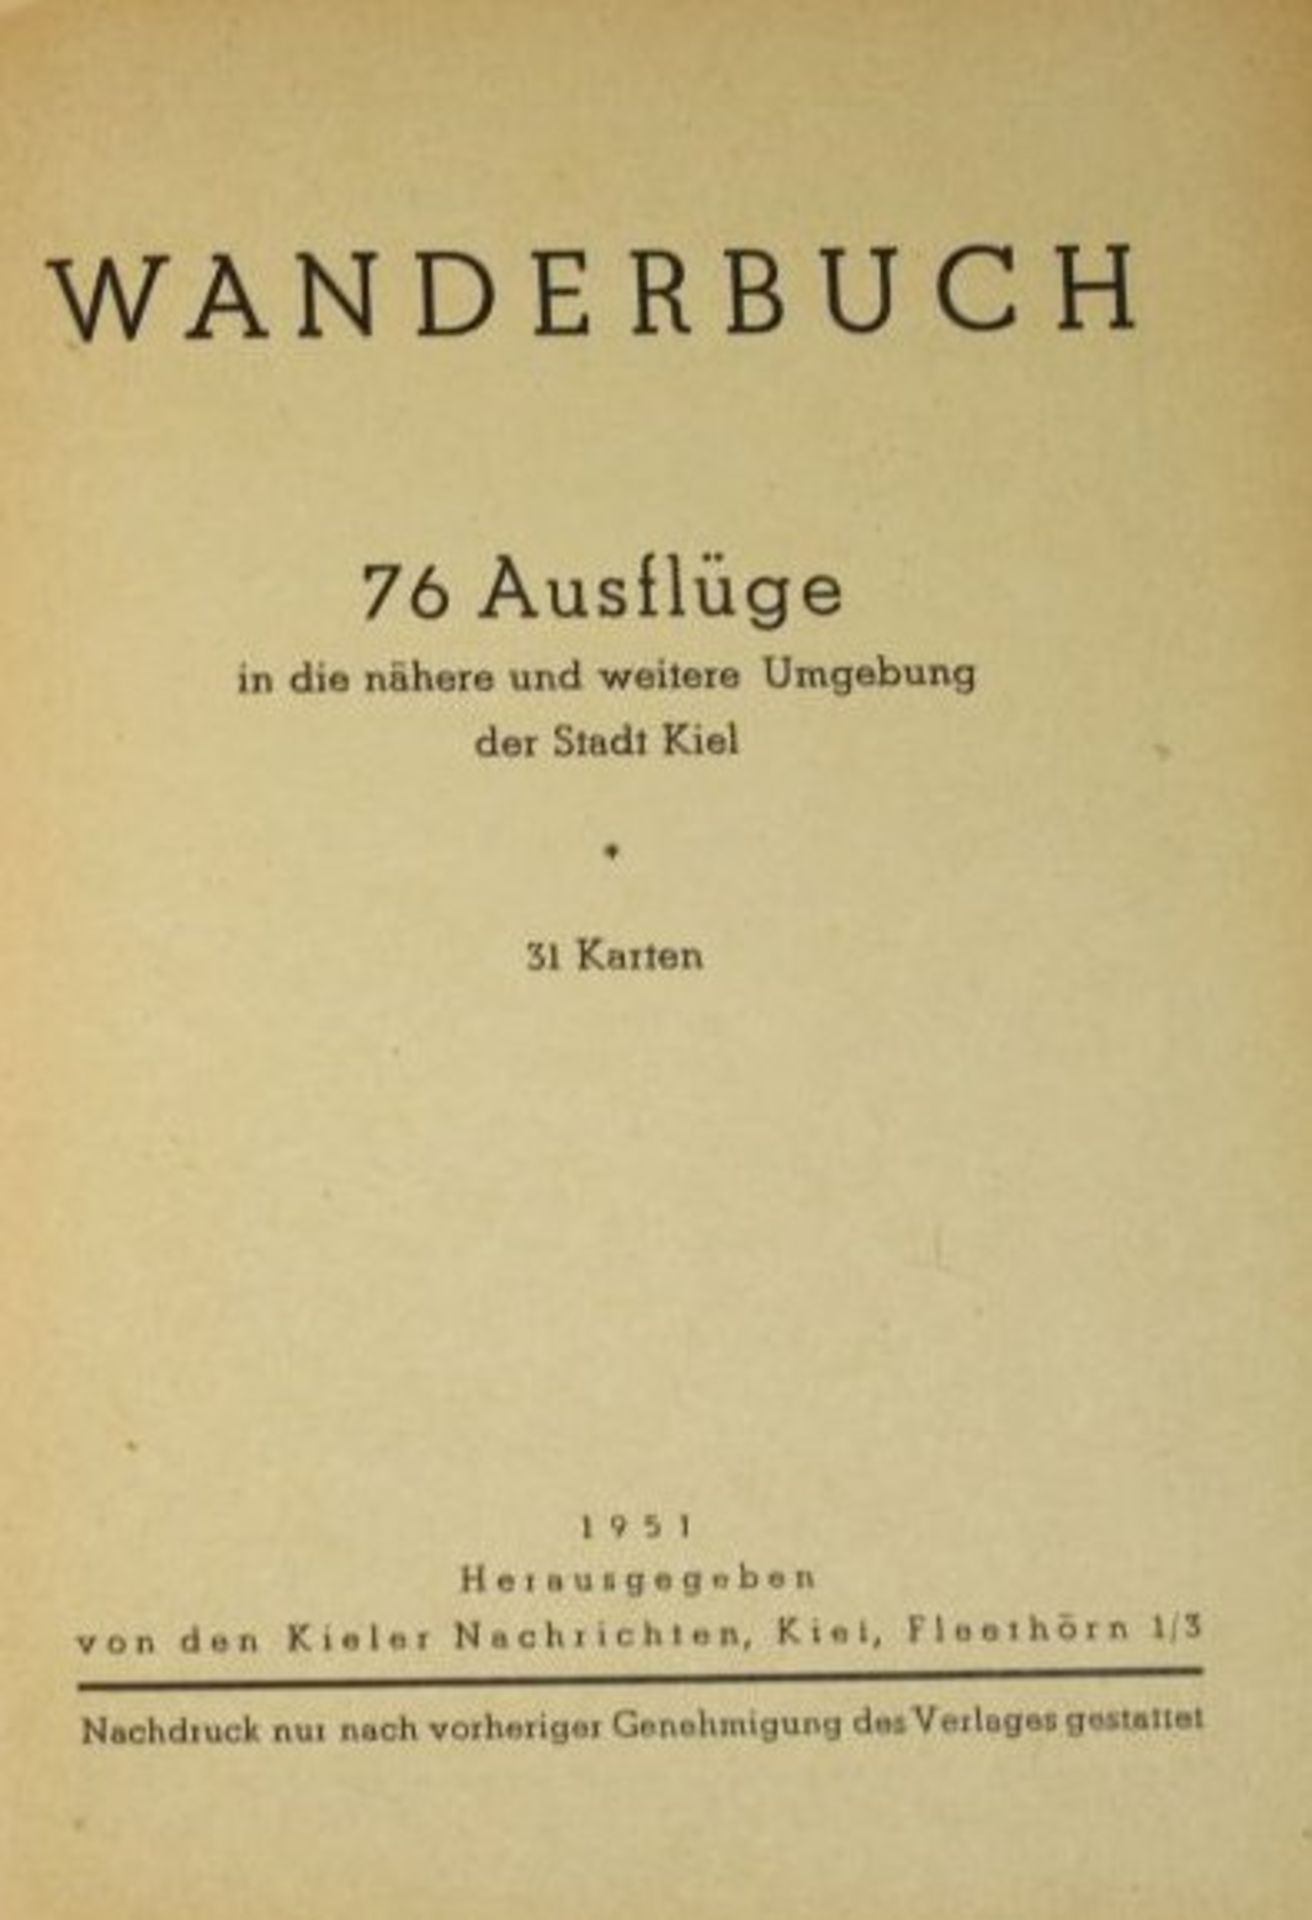 Wanderbuch der Kieler-Nachrichten, 1951 - Bild 2 aus 2